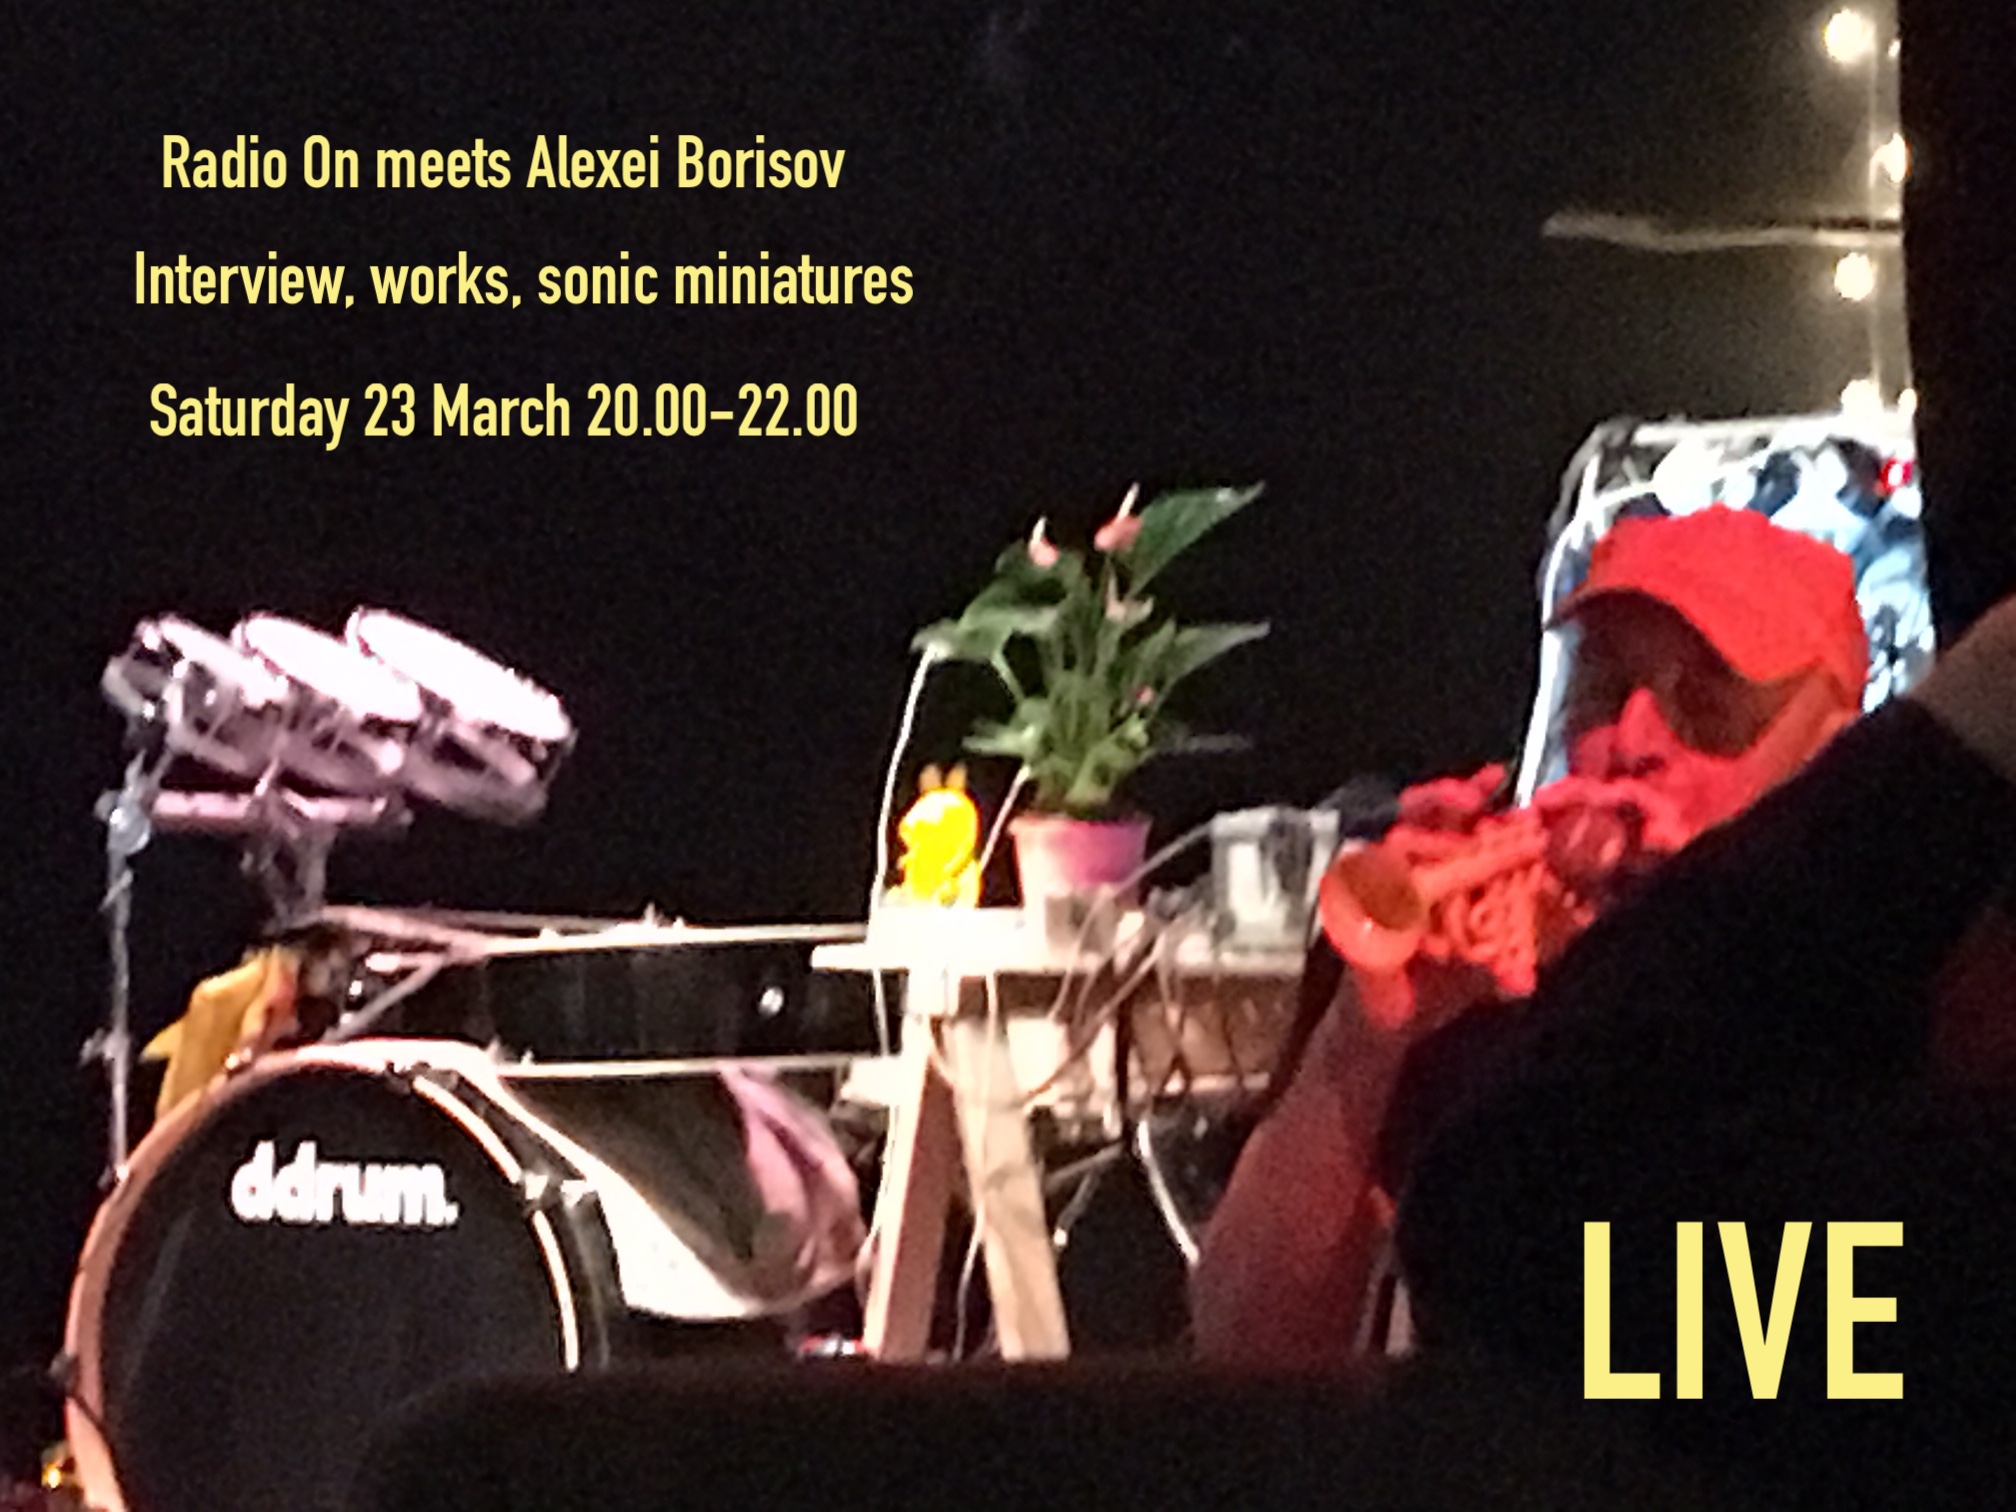 23. March 20.00-22.00 Live Show with Alexei Borisov